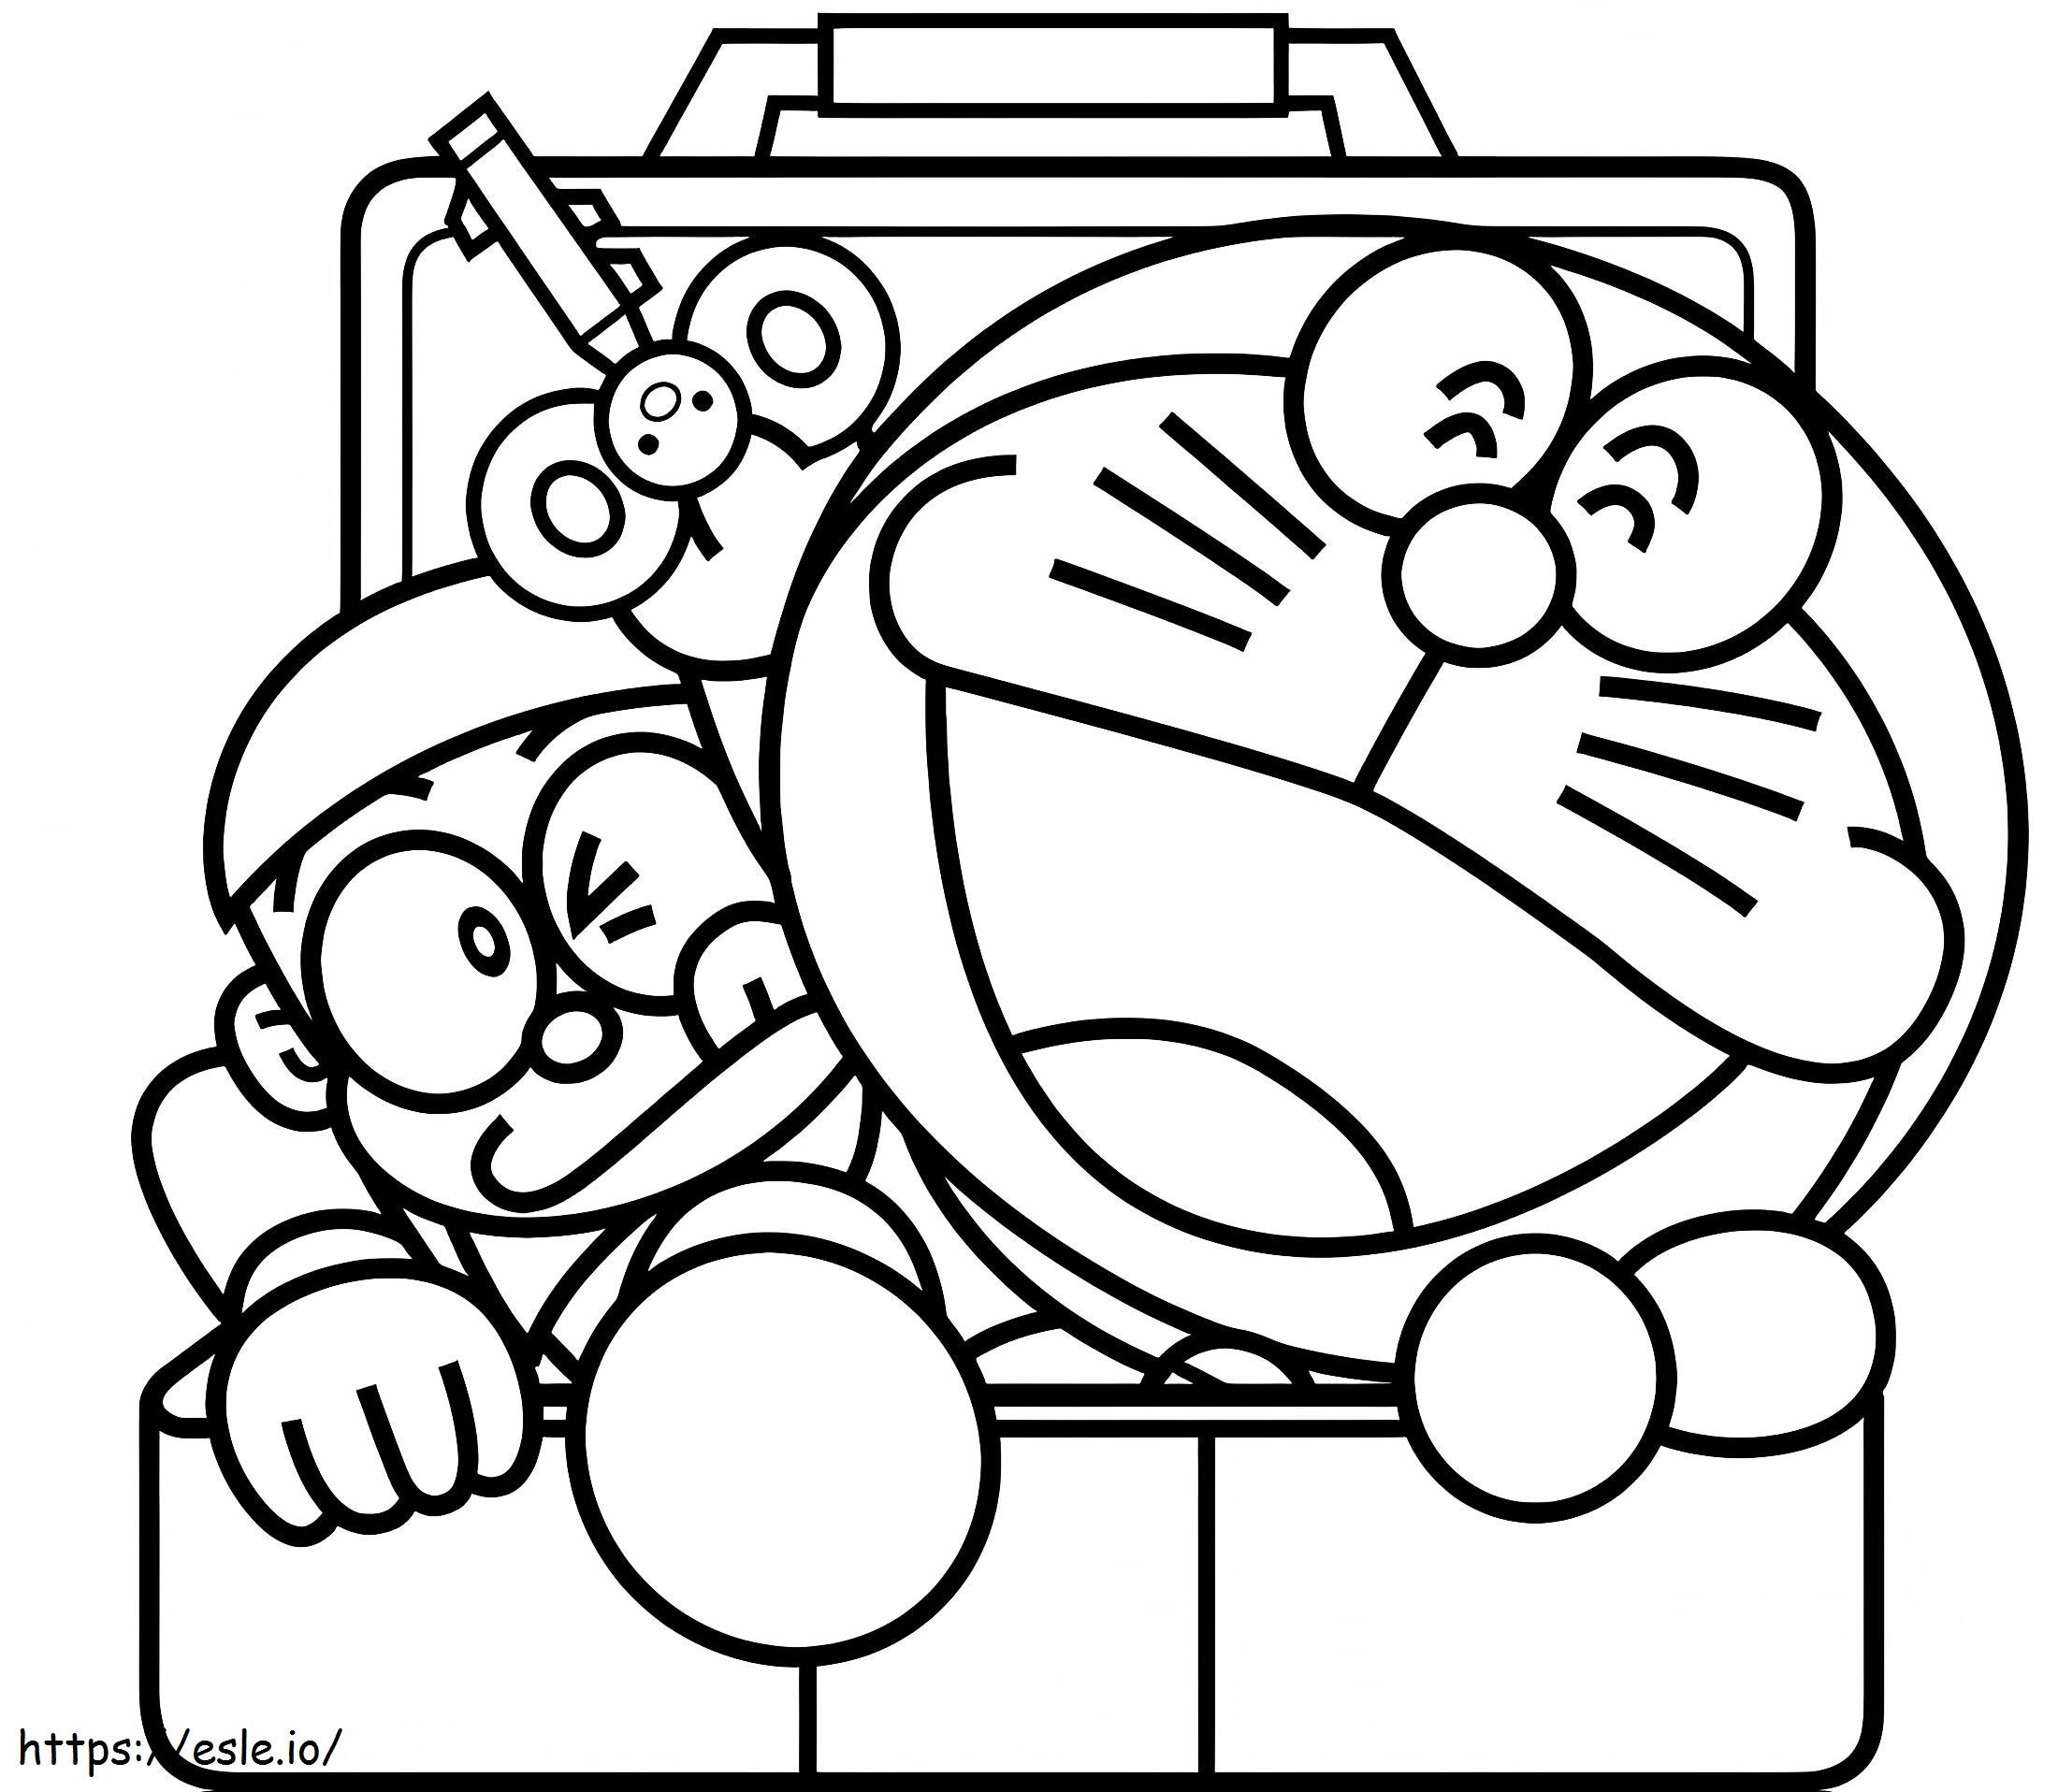  Doraemon E Nobita In Scatola A4 da colorare